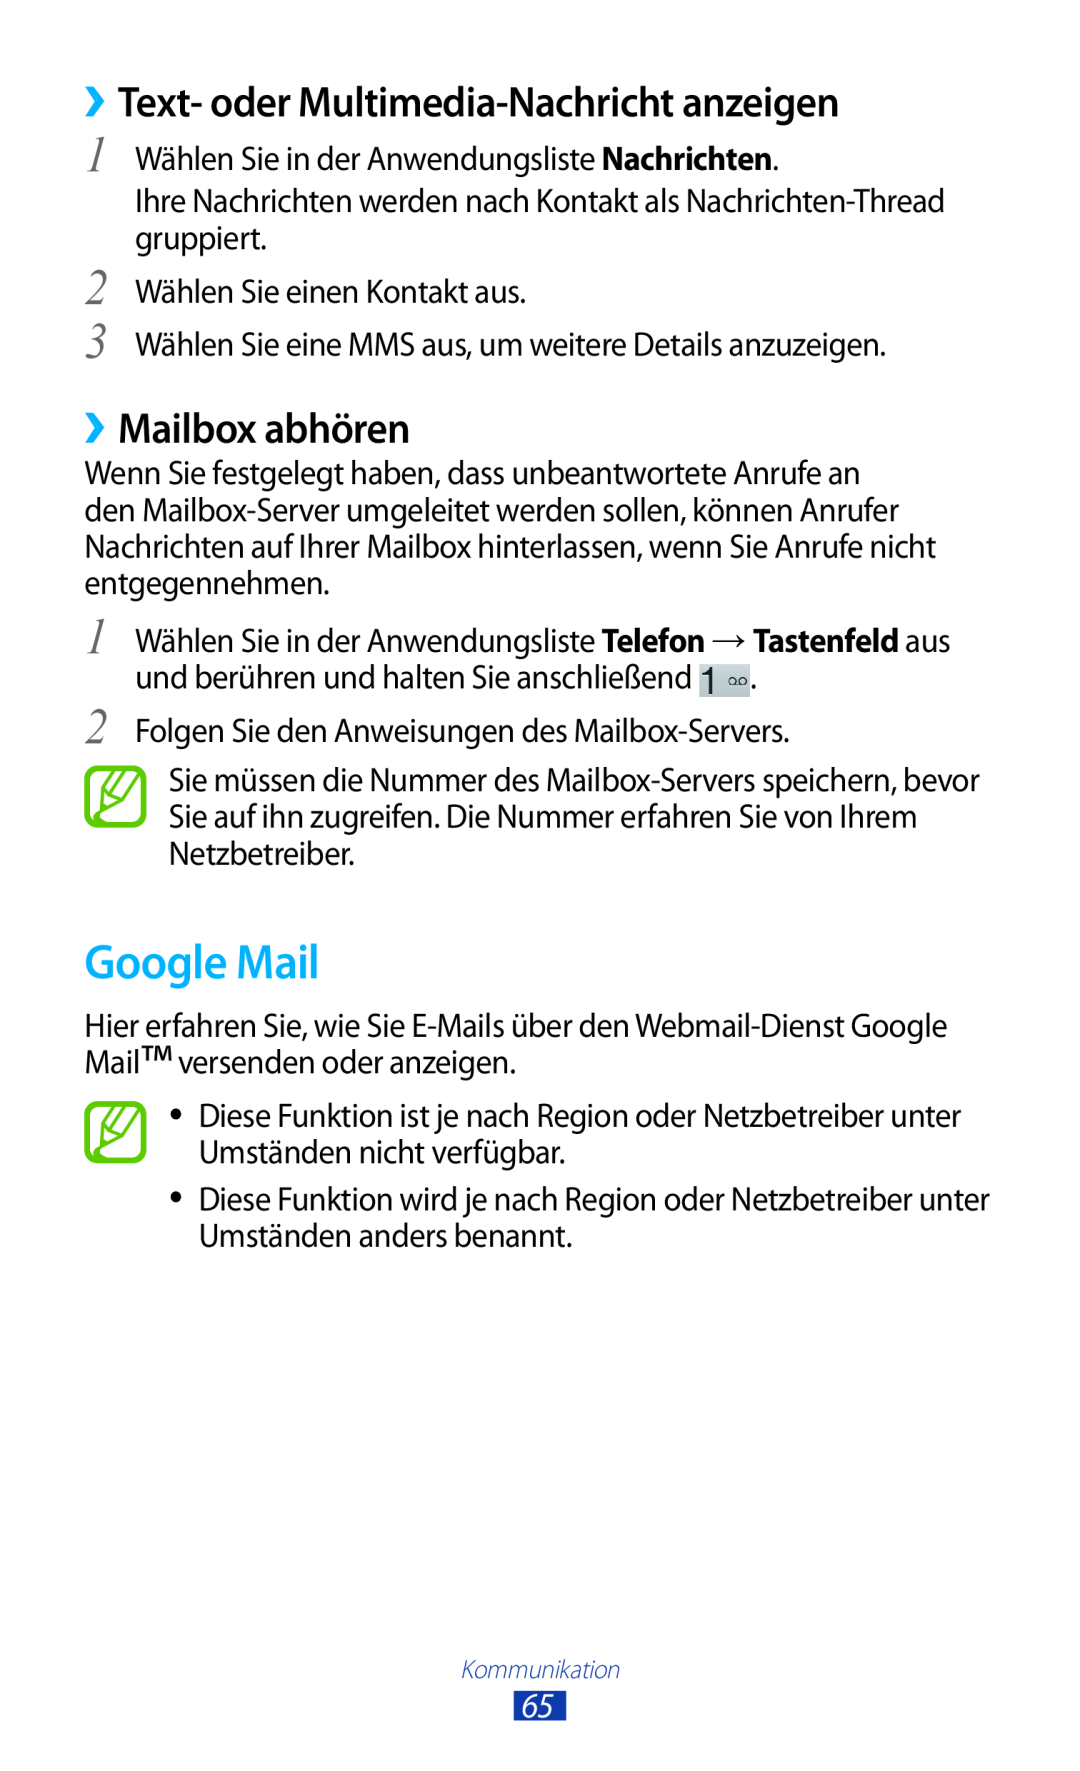 Samsung GT-P5100ZWASEB, GT-P5100ZWEATO manual Google Mail, ››Text- oder Multimedia-Nachricht anzeigen, ››Mailbox abhören 